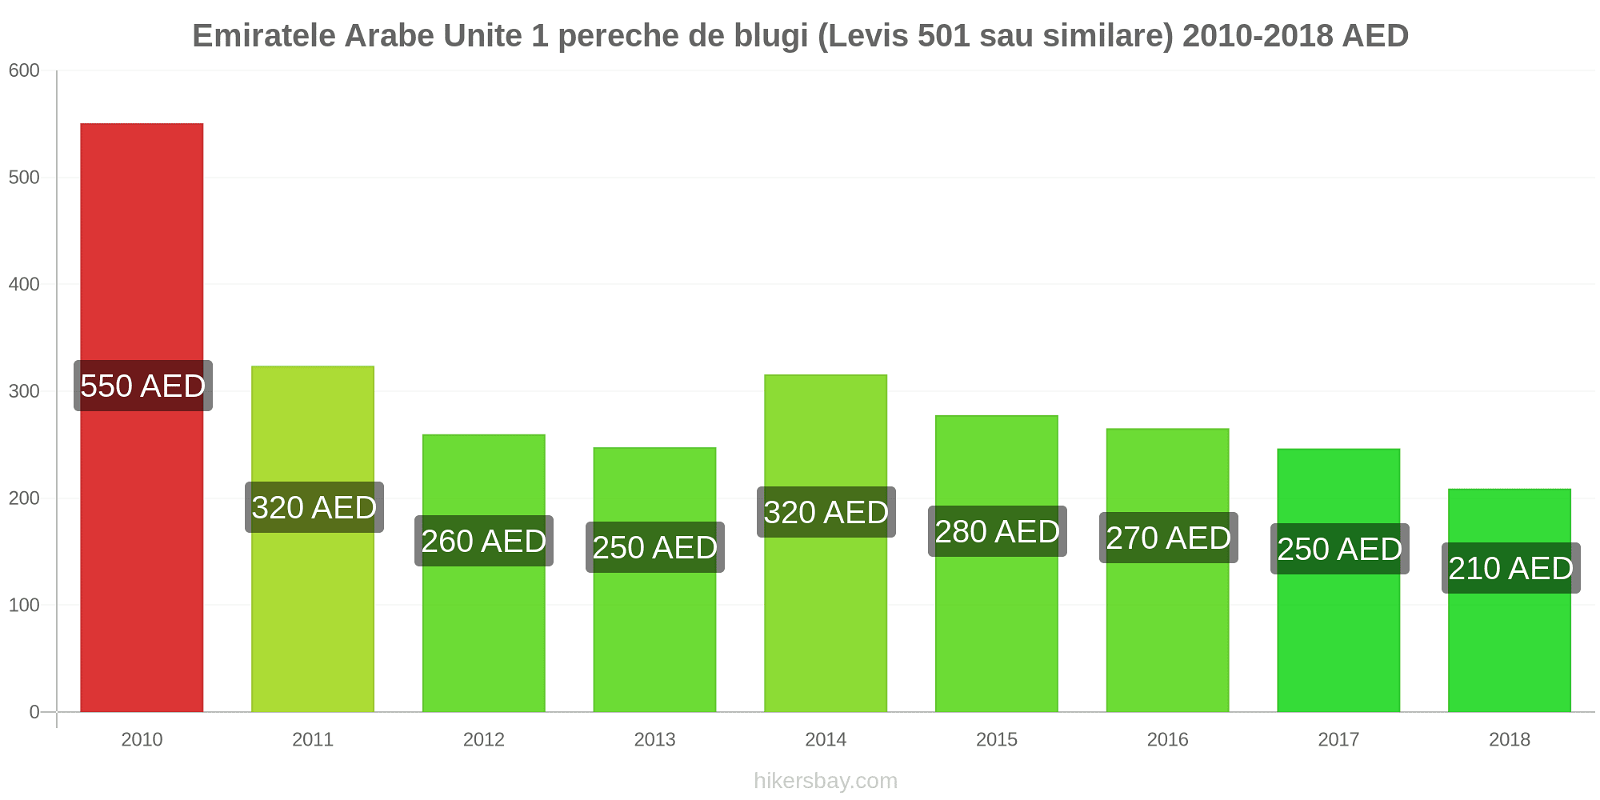 Emiratele Arabe Unite schimbări de prețuri 1 pereche de blugi (Levis 501 sau similare) hikersbay.com